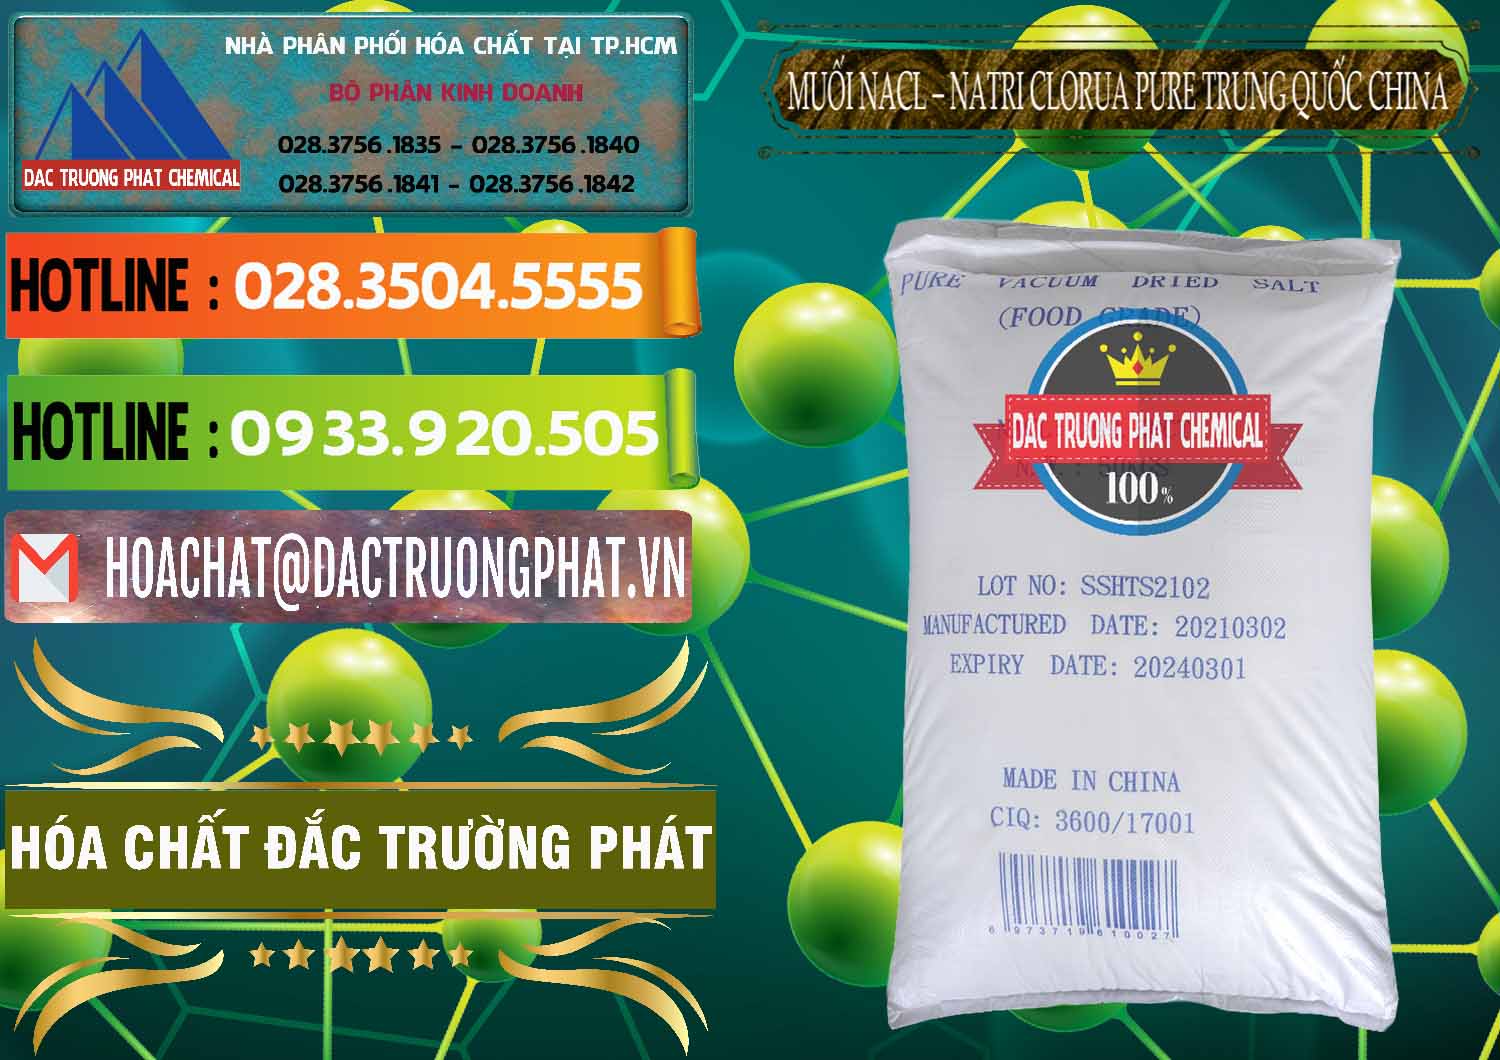 Nhà cung ứng ( bán ) Muối NaCL – Sodium Chloride Pure Trung Quốc China - 0230 - Công ty cung ứng và phân phối hóa chất tại TP.HCM - cungcaphoachat.com.vn